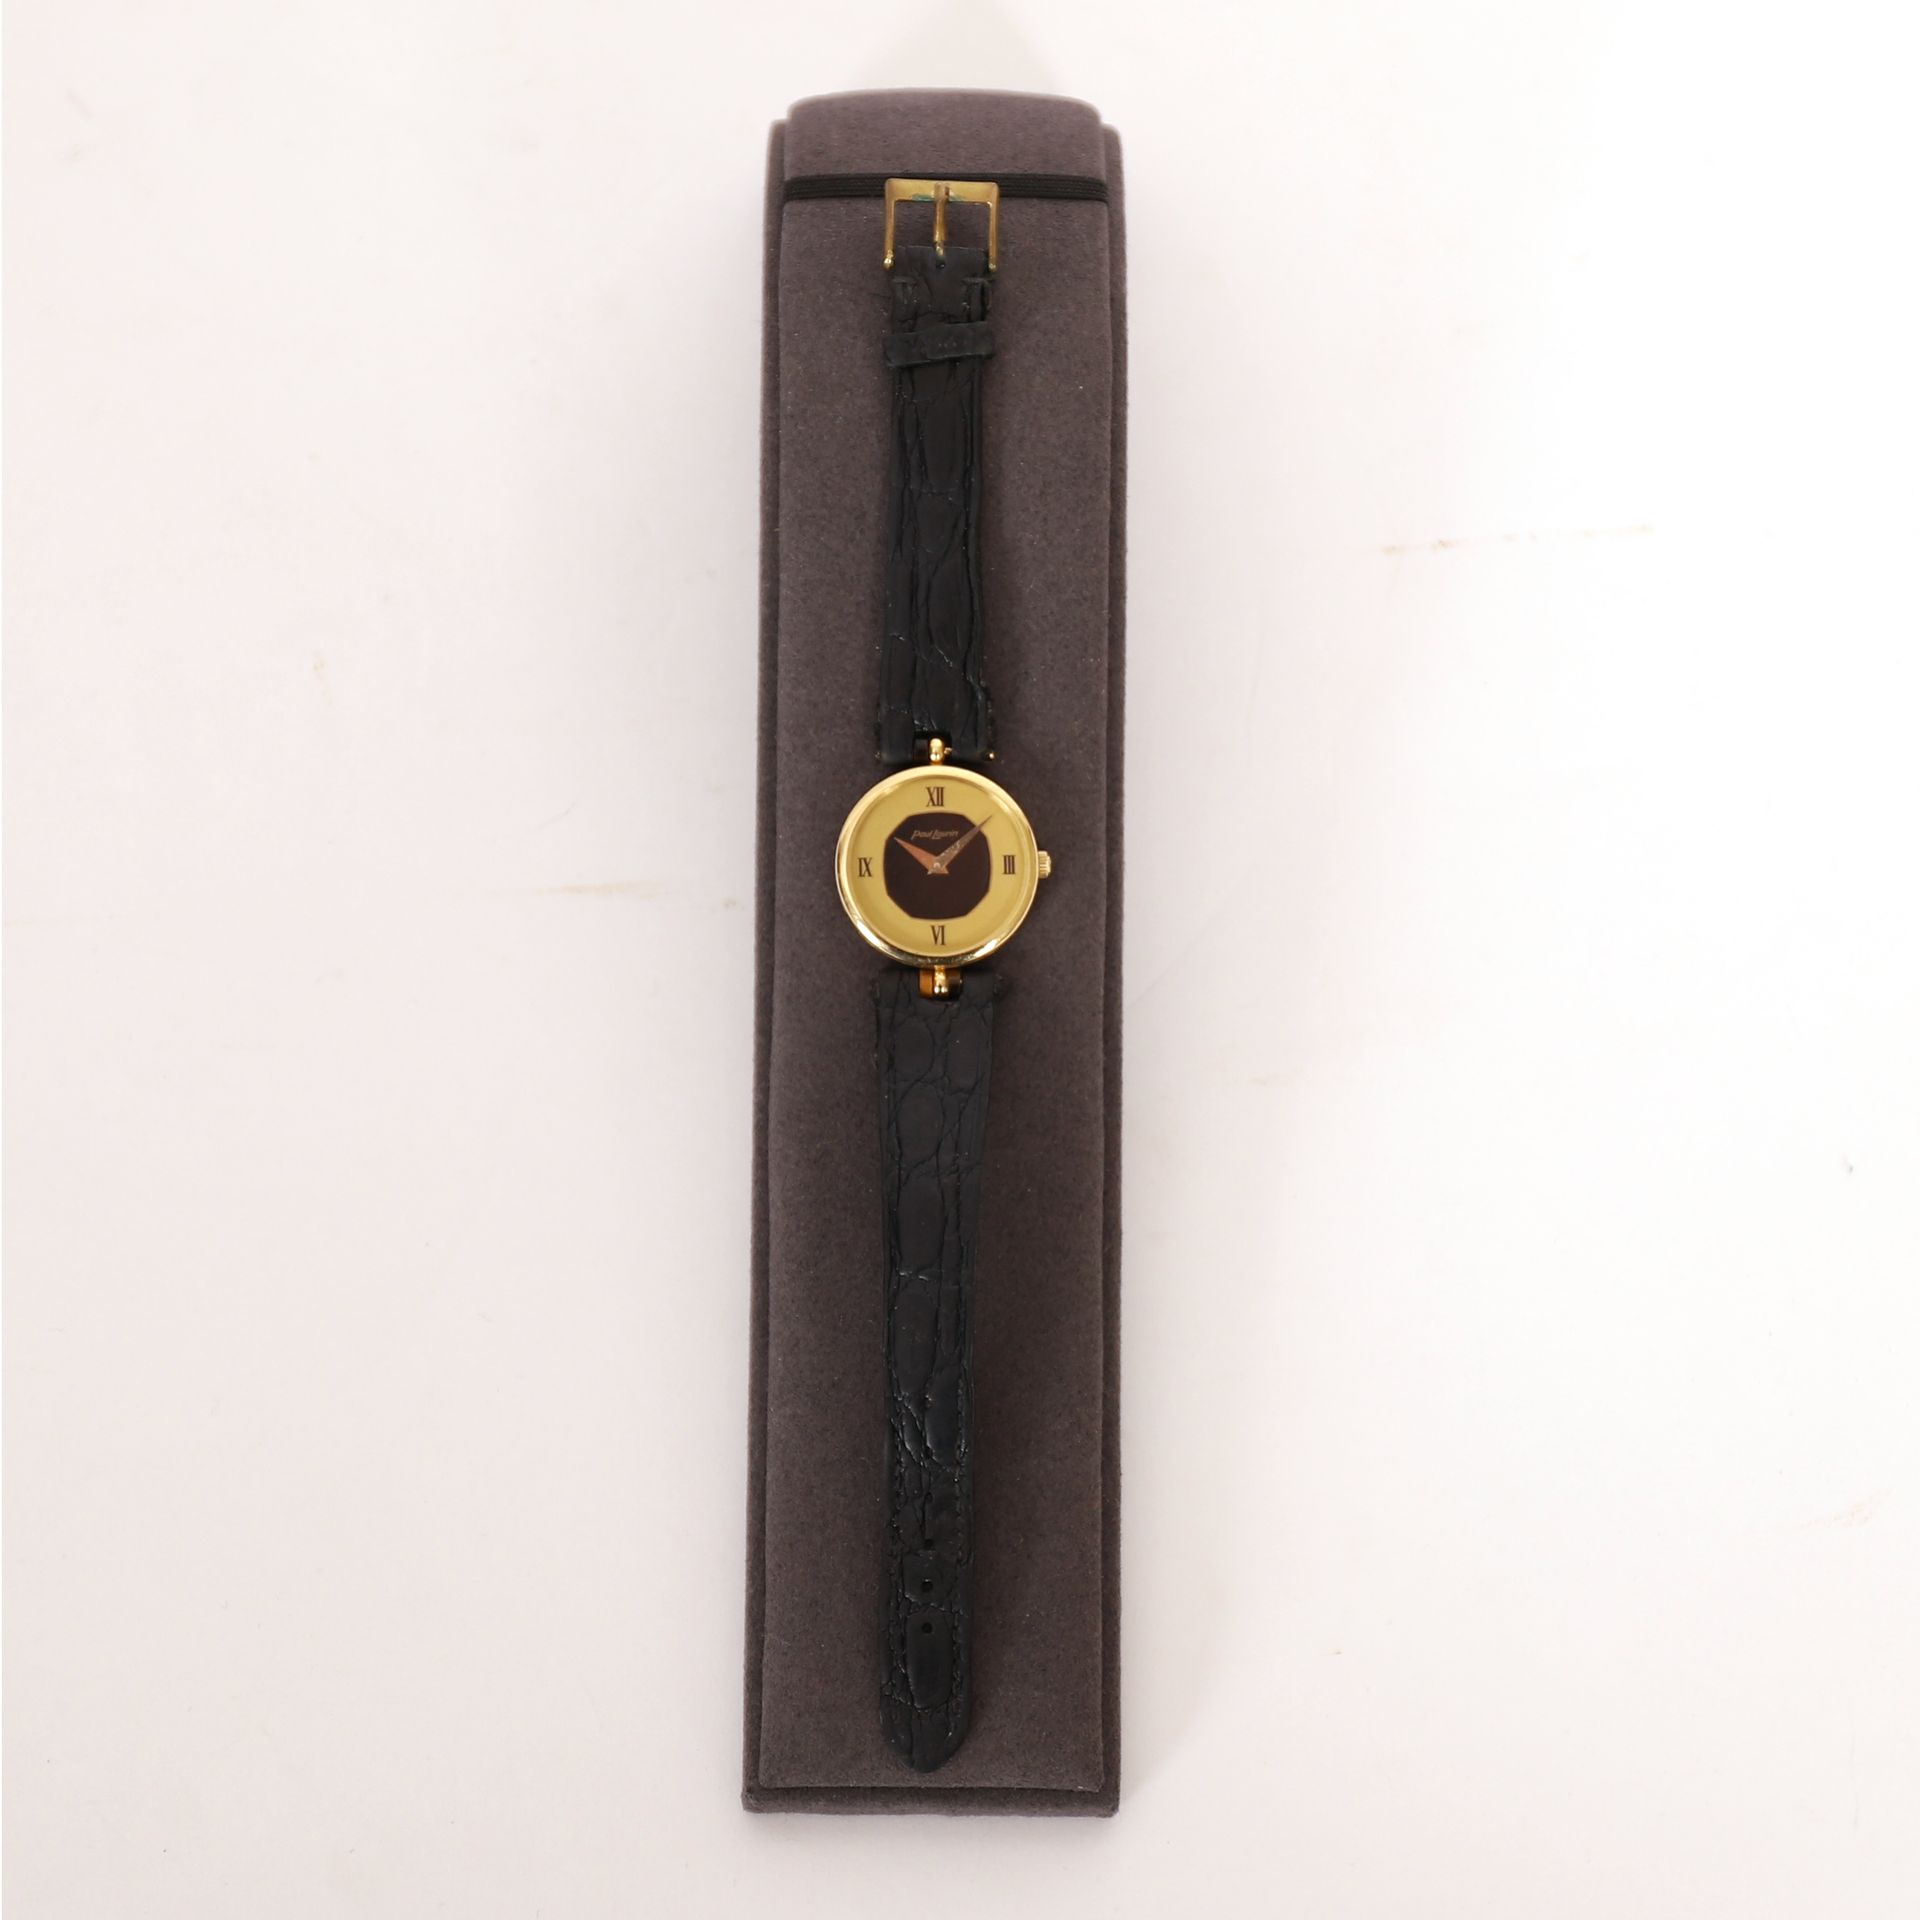 Null MONTRE EN OR PAUL LAURIN

Bracelet en cuir noir

Pb : 22 grs